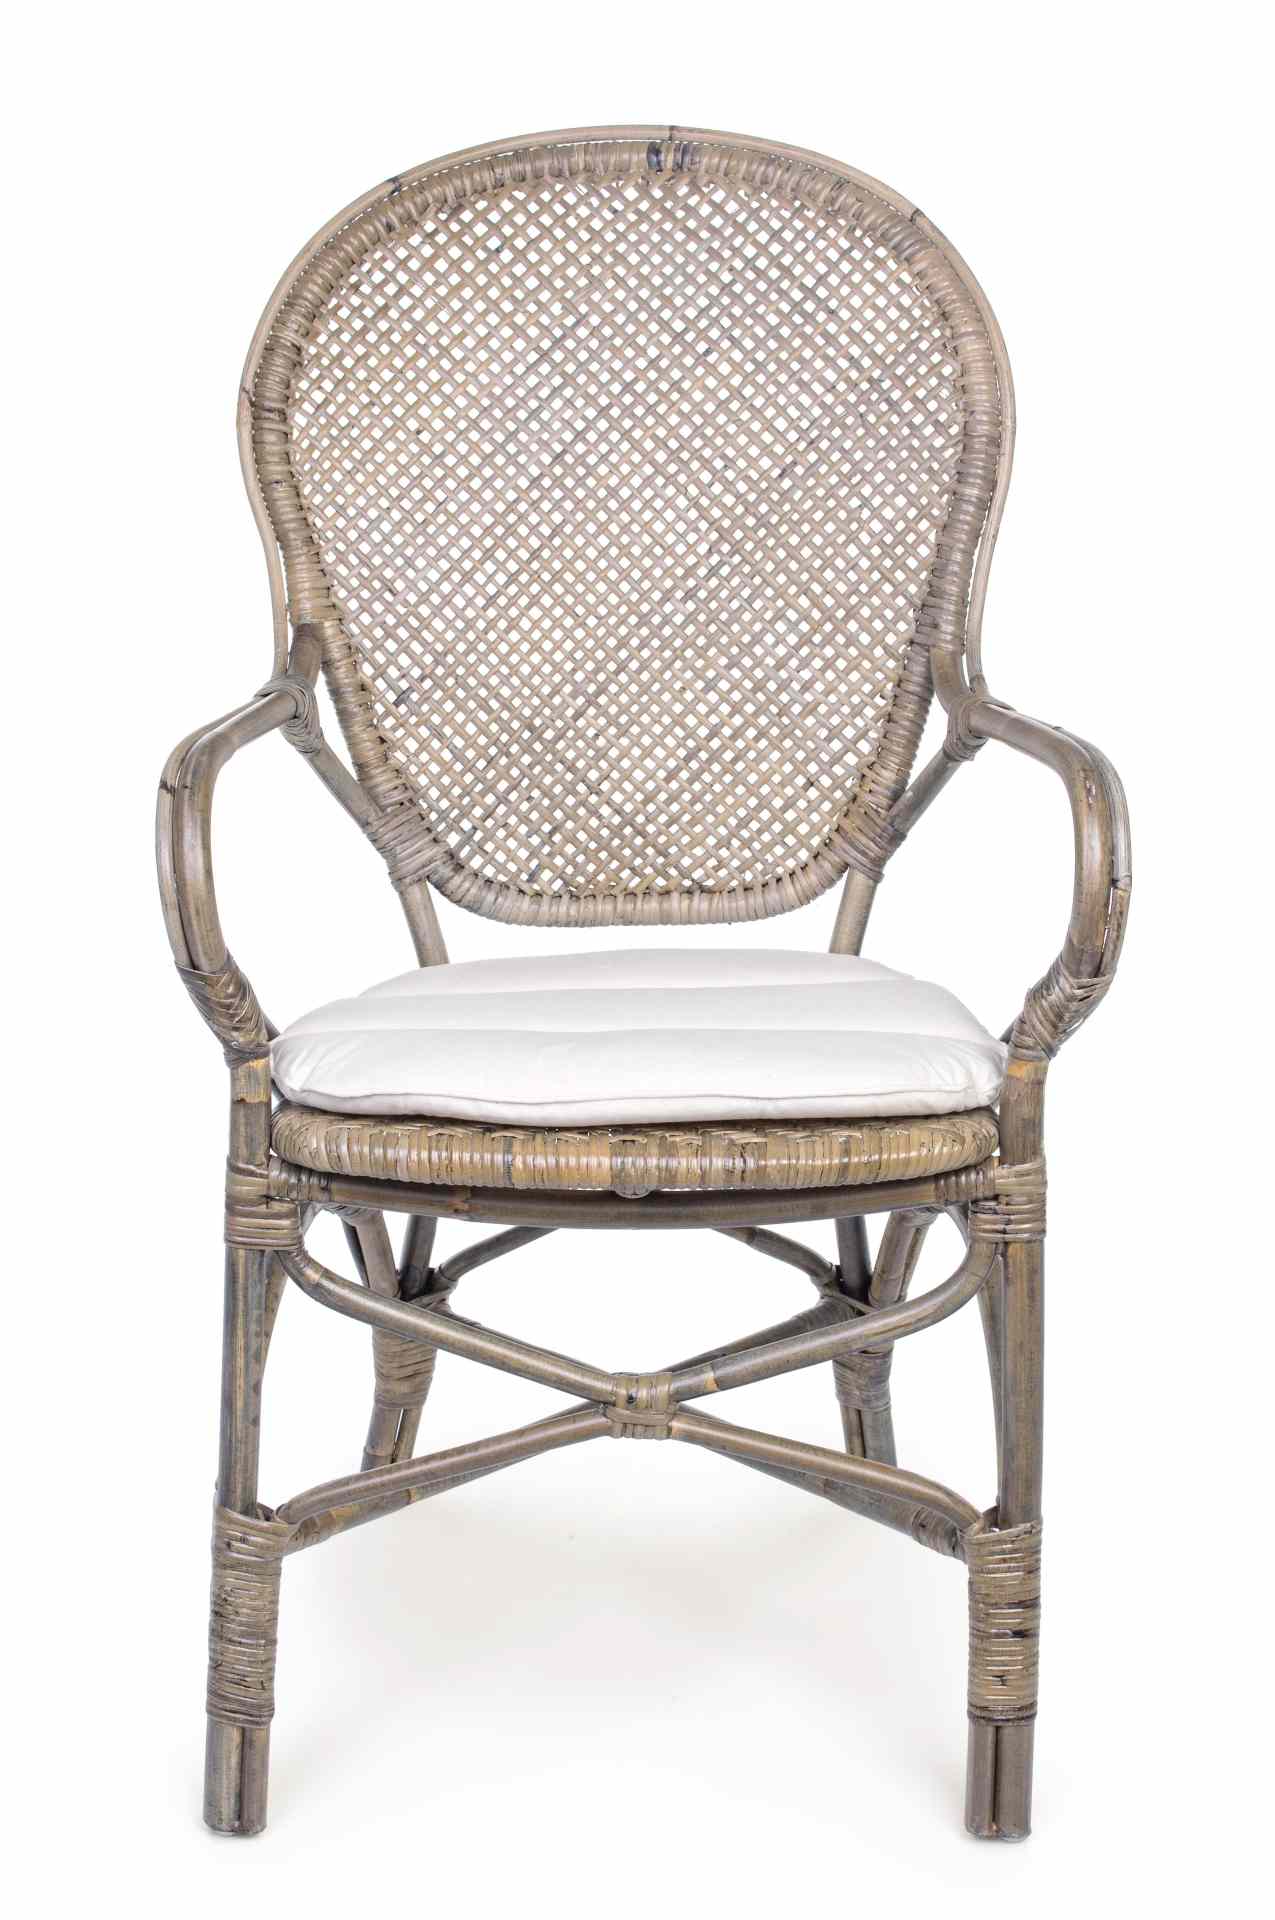 Der Stuhl Edelina überzeugt mit seinem klassischem Design. Gefertigt wurde der Stuhl aus Rattan, welches einen natürlichen Farbton besitzt. Der Stuhl beinhaltet ein Sitzkissen aus Baumwolle. Die Sitzhöhe beträgt 47 cm.